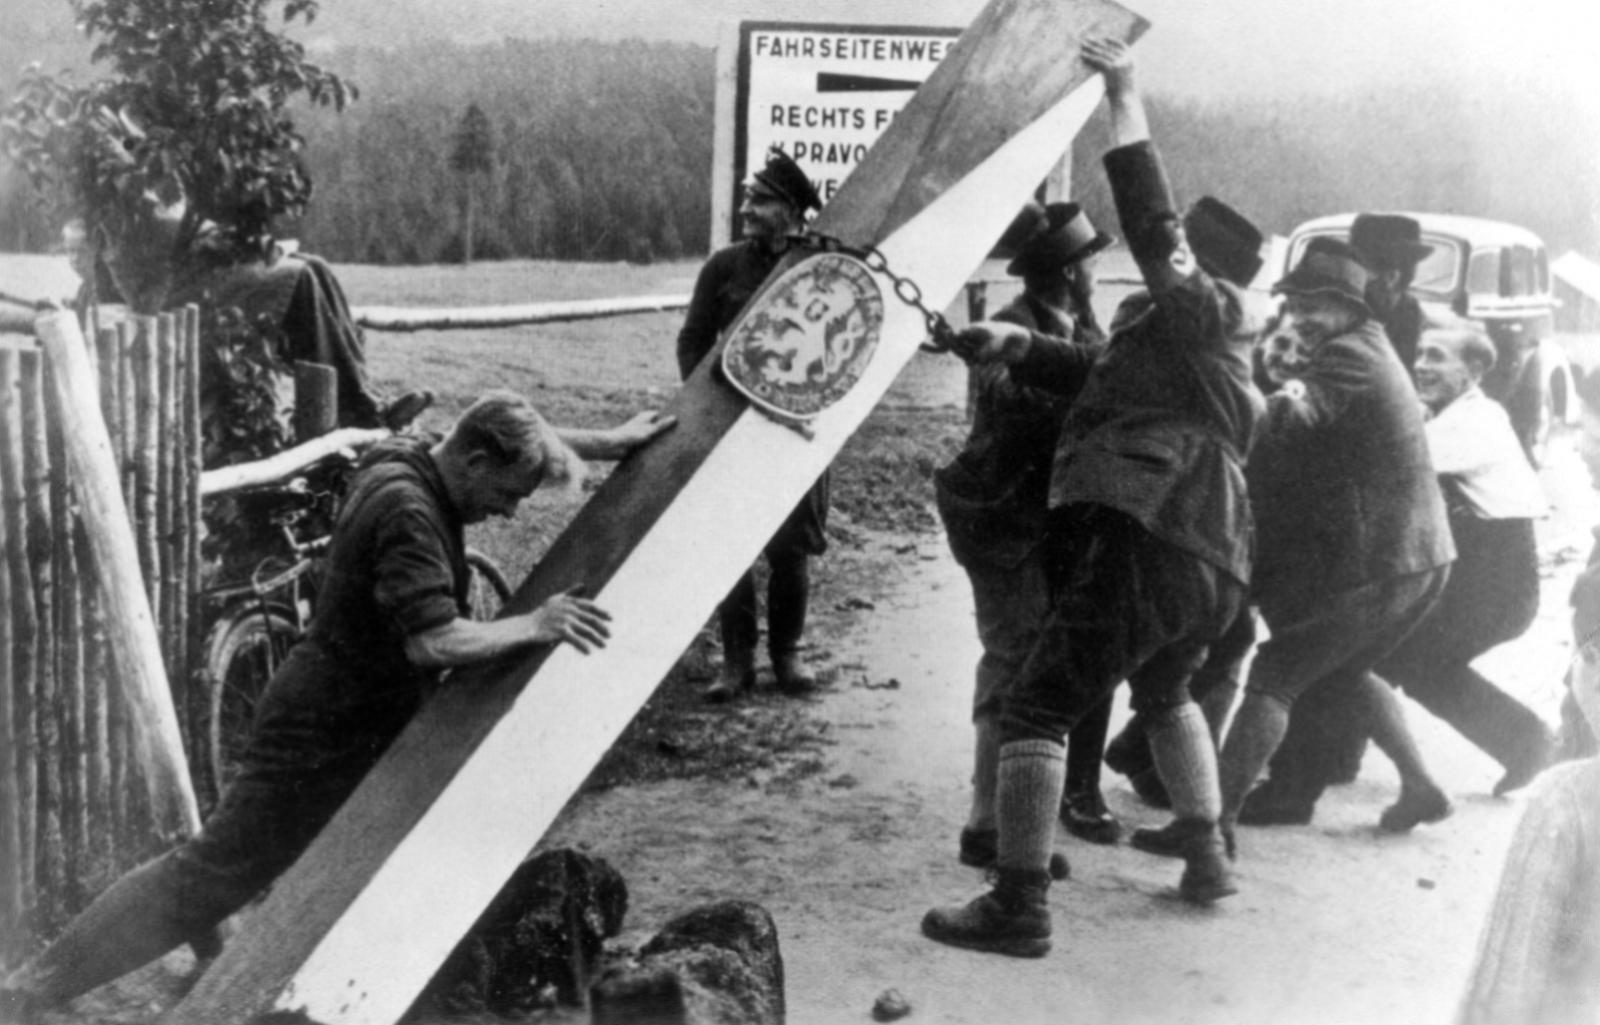 Сторонники Третьего рейха валят столб с символом Чехословакии.